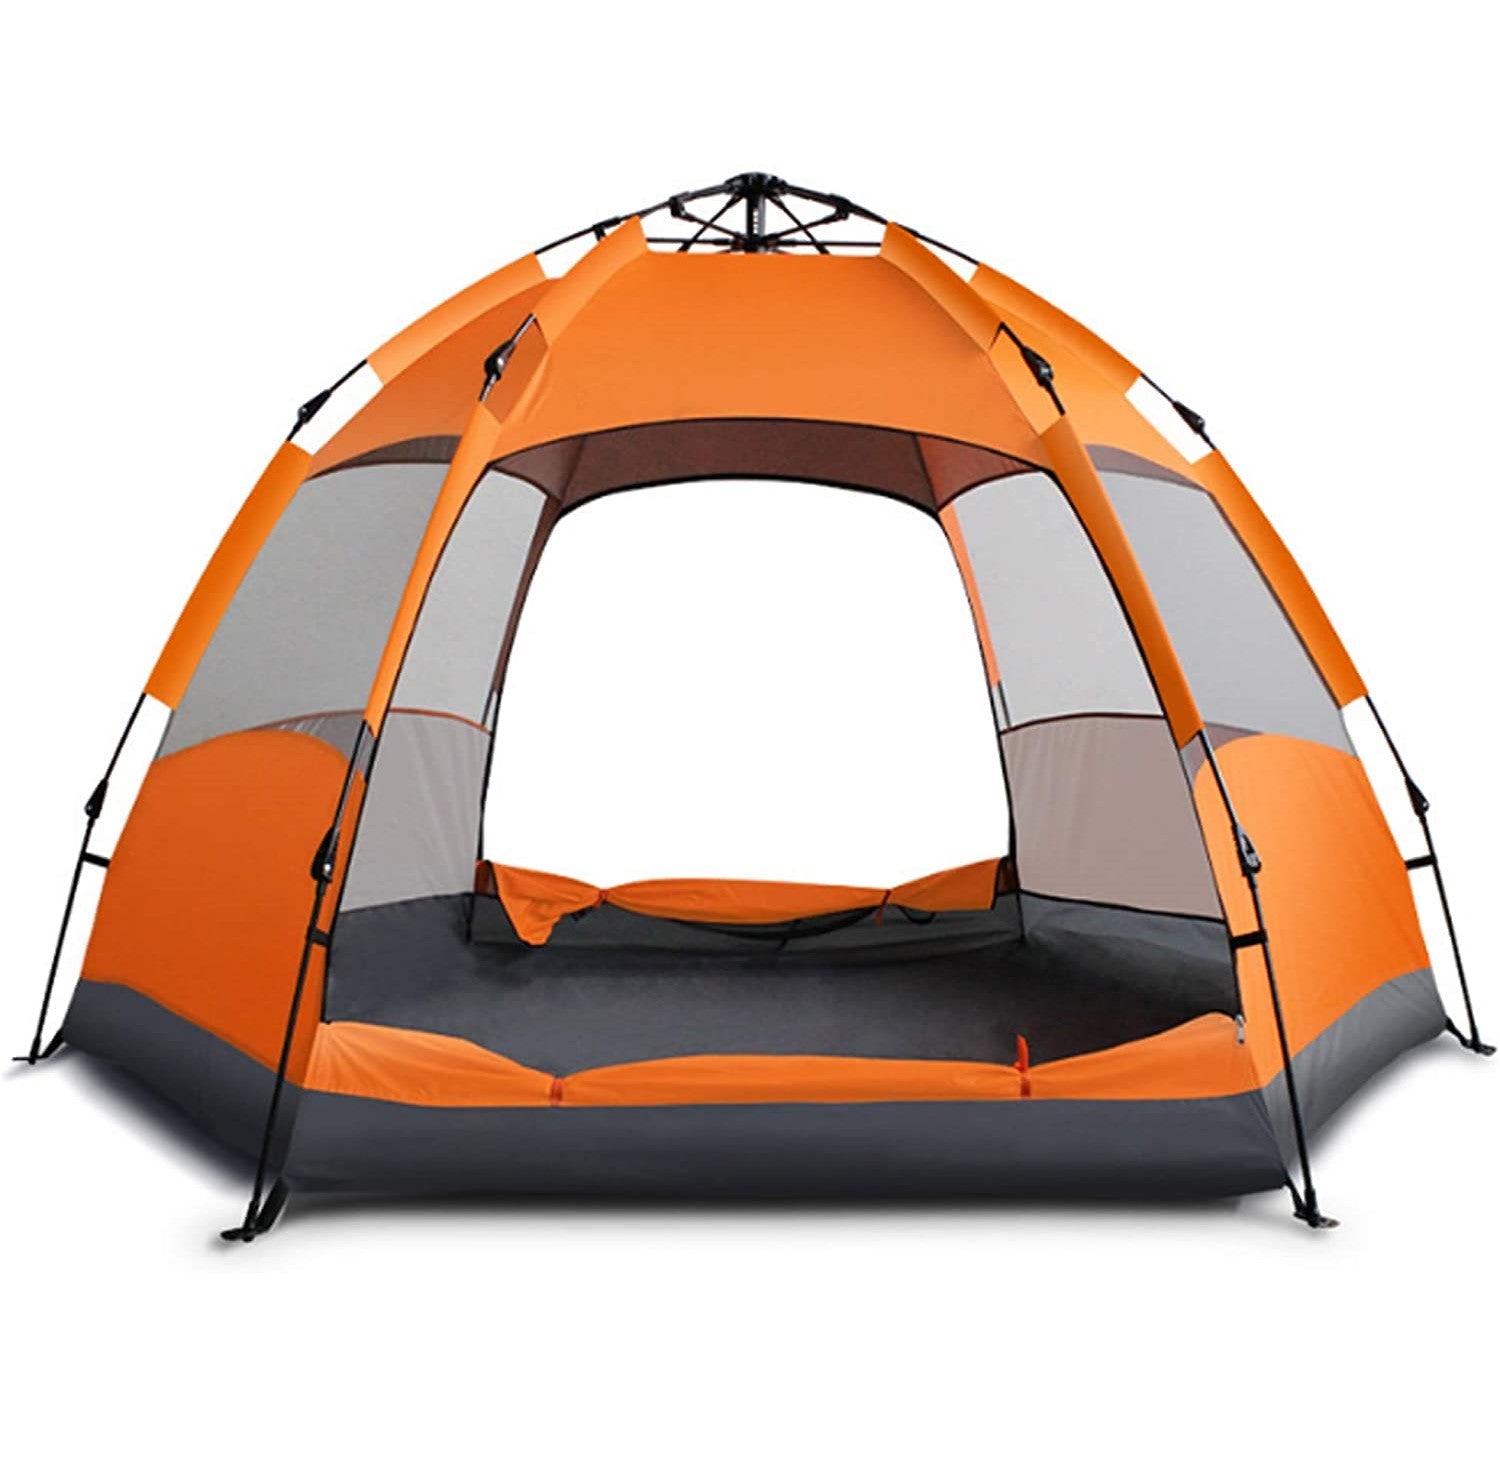 specificatie Mars Of anders GlareWheel Instant Pop Up Tent 4 Person Orange